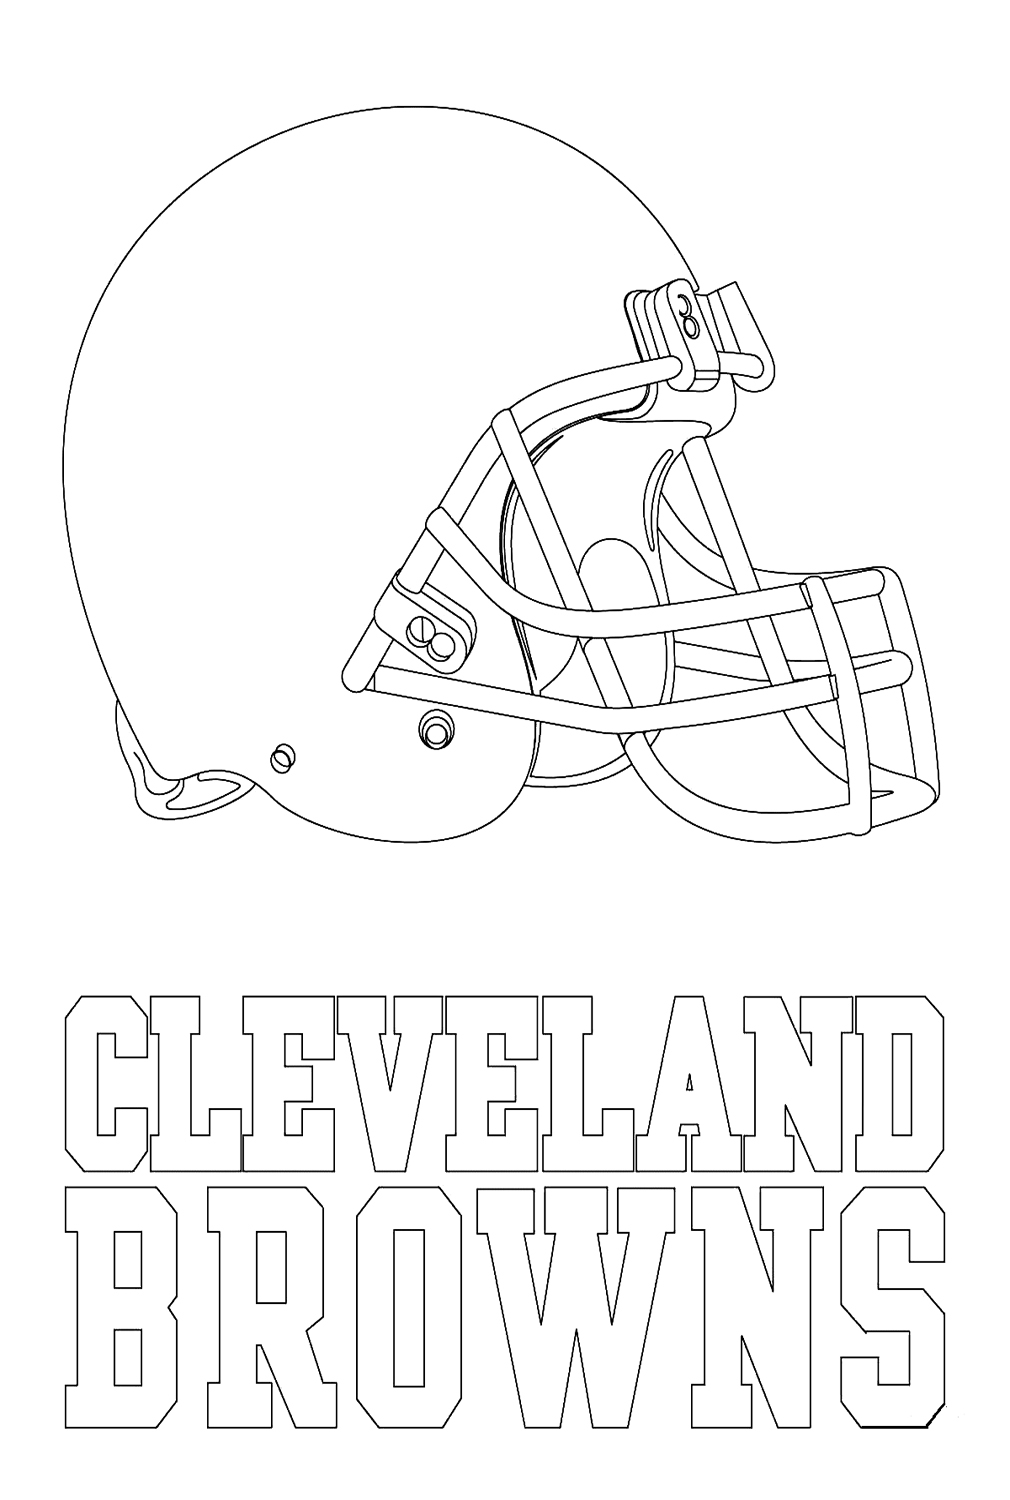 Logotipo do Cleveland Browns da NFL